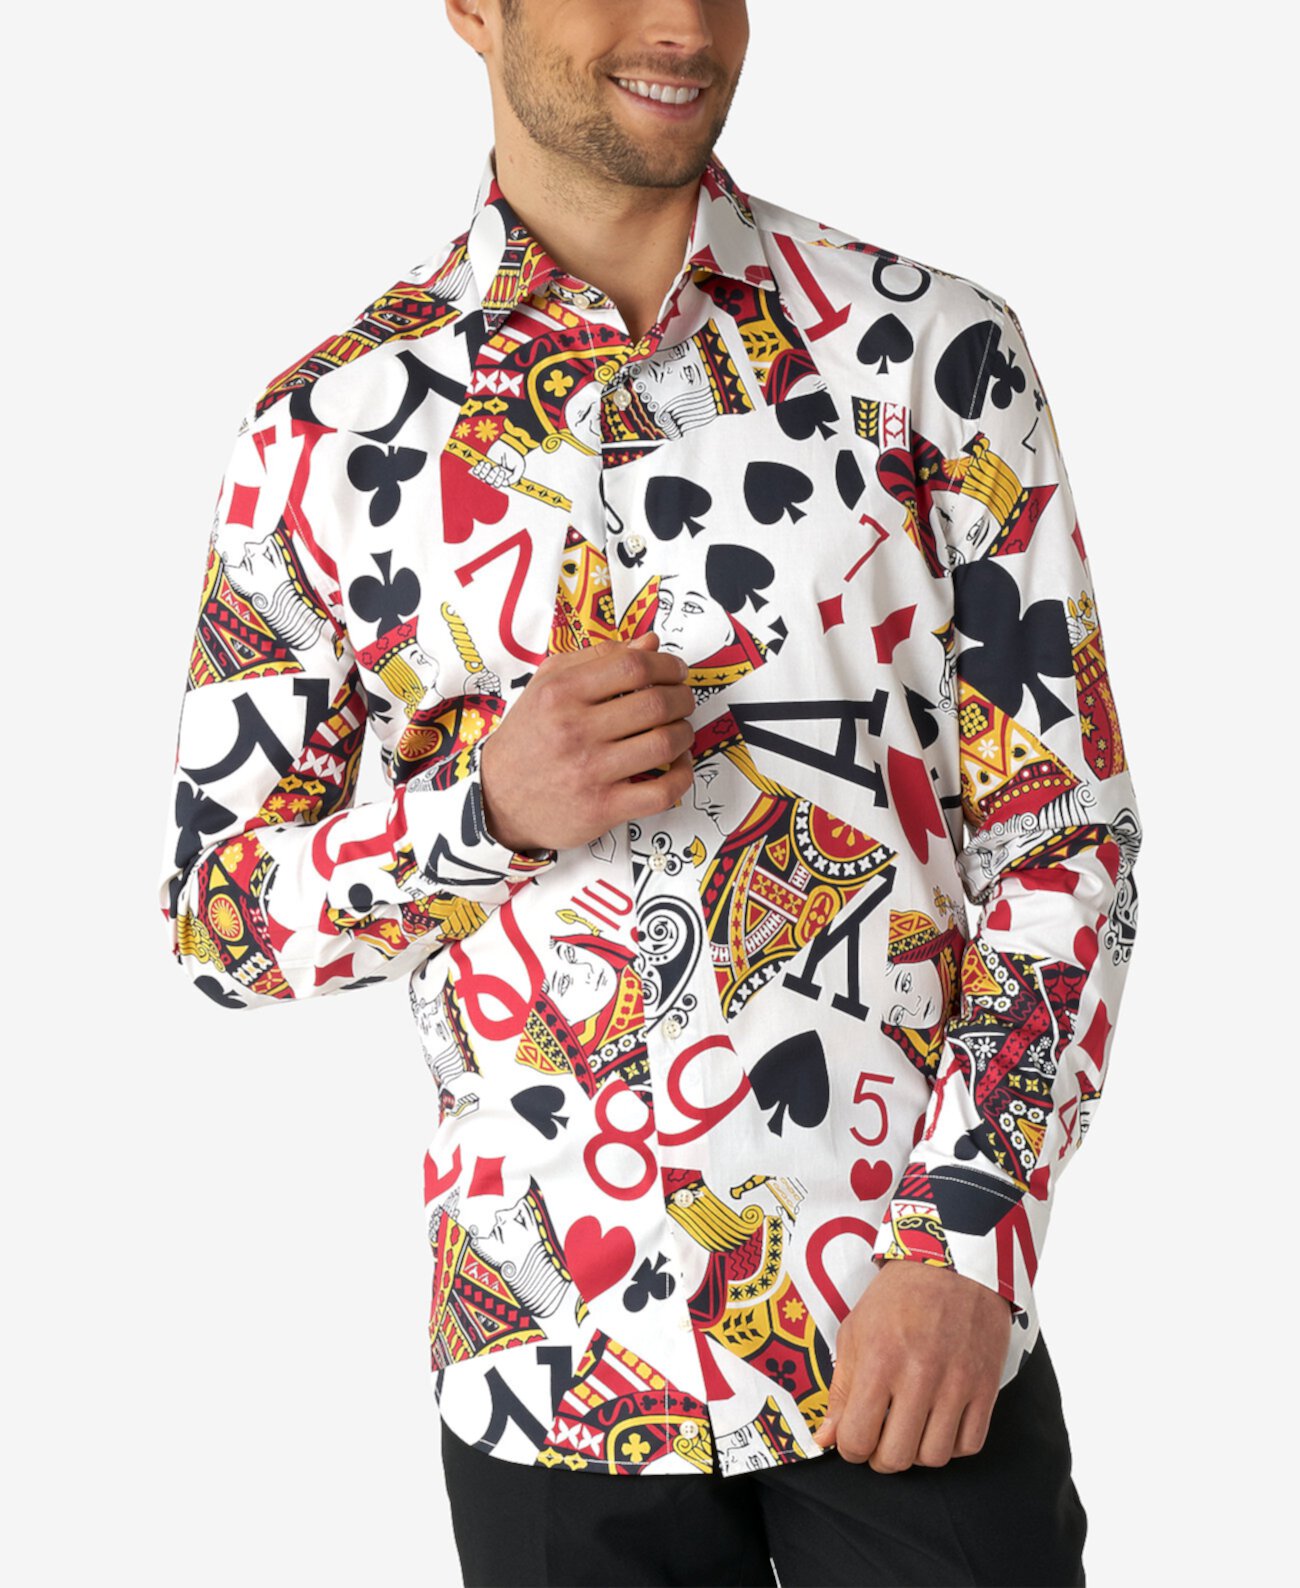 Мужская классическая рубашка в стиле покера для большого и высокого роста в стиле короля клубов OppoSuits